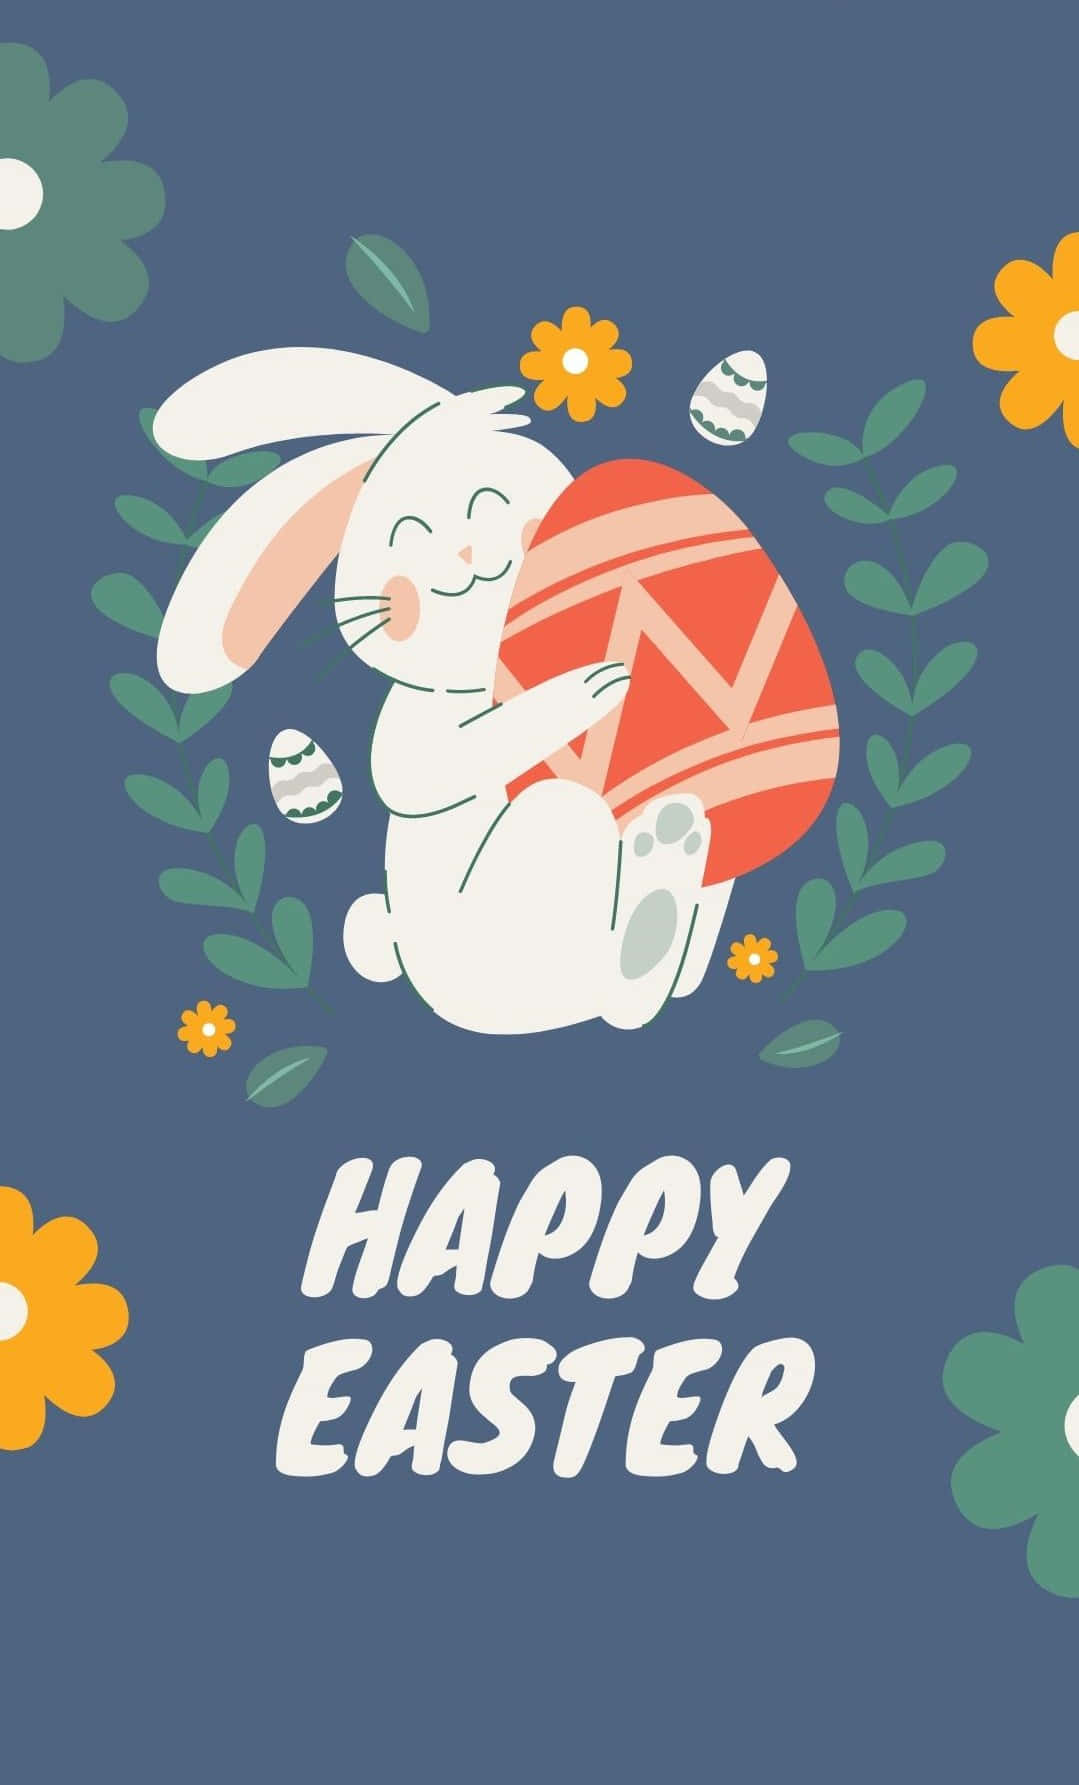 Feiernsie Ostern Mit Diesem Entzückenden Niedlichen Oster-iphone Wallpaper